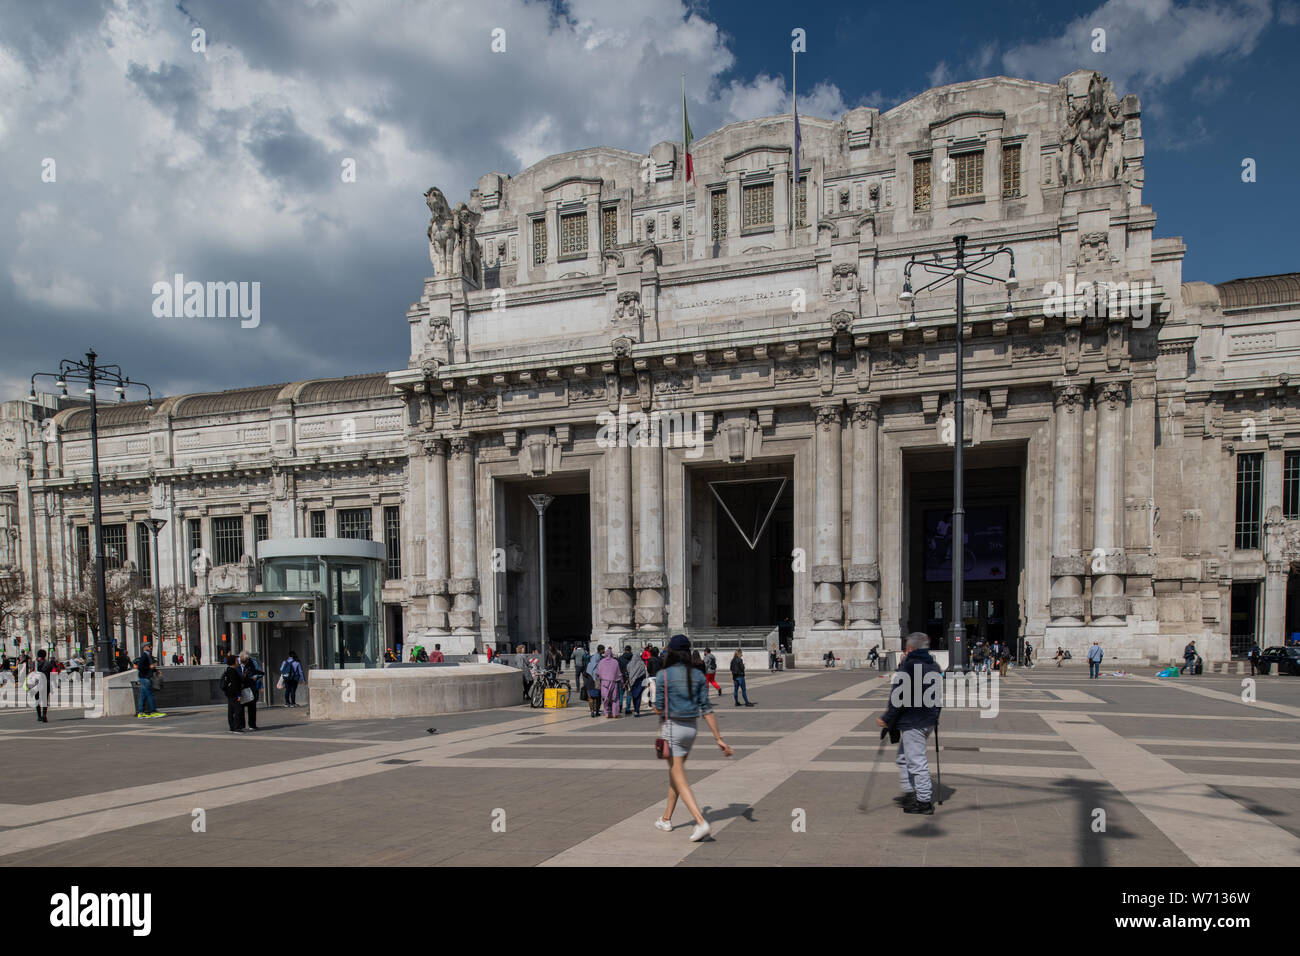 Milano, Italia - 30 Giugno 2019: Vista della Stazione Centrale - Stazione Centrale Foto Stock